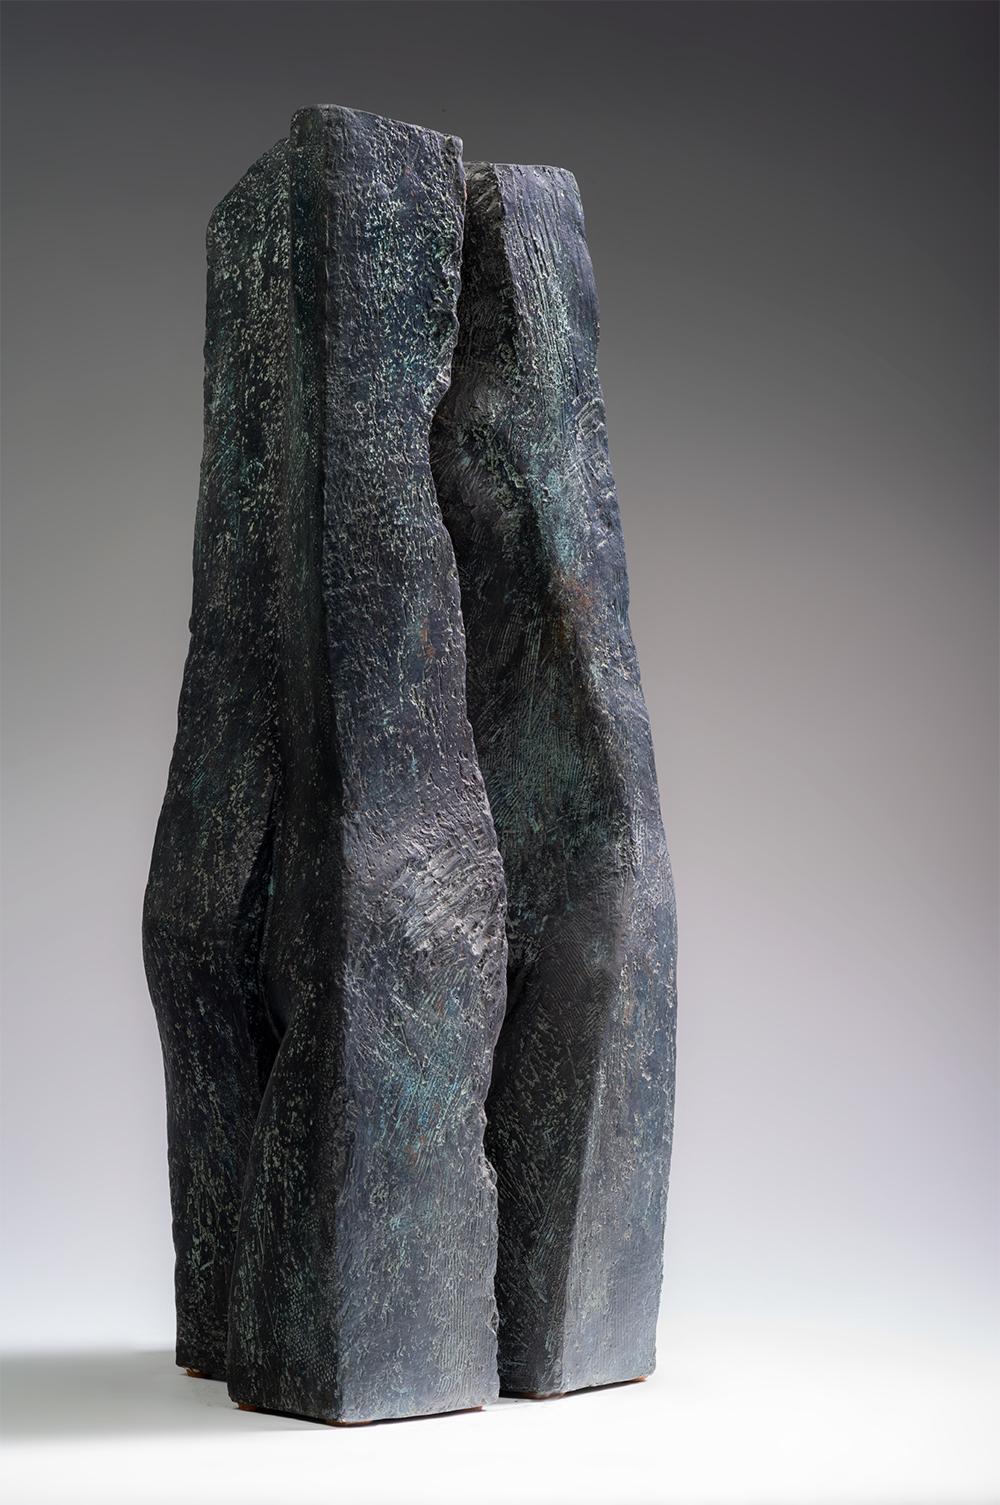 Duo ist eine Bronzeskulptur der französischen Künstlerin Martine Demal mit den Maßen 48 × 20 × 22 cm (18,9 × 7,9 × 8,7 Zoll).  
Die Skulptur ist signiert und nummeriert, gehört zu einer limitierten Auflage von 8 Exemplaren + 4 Künstlerabzügen und